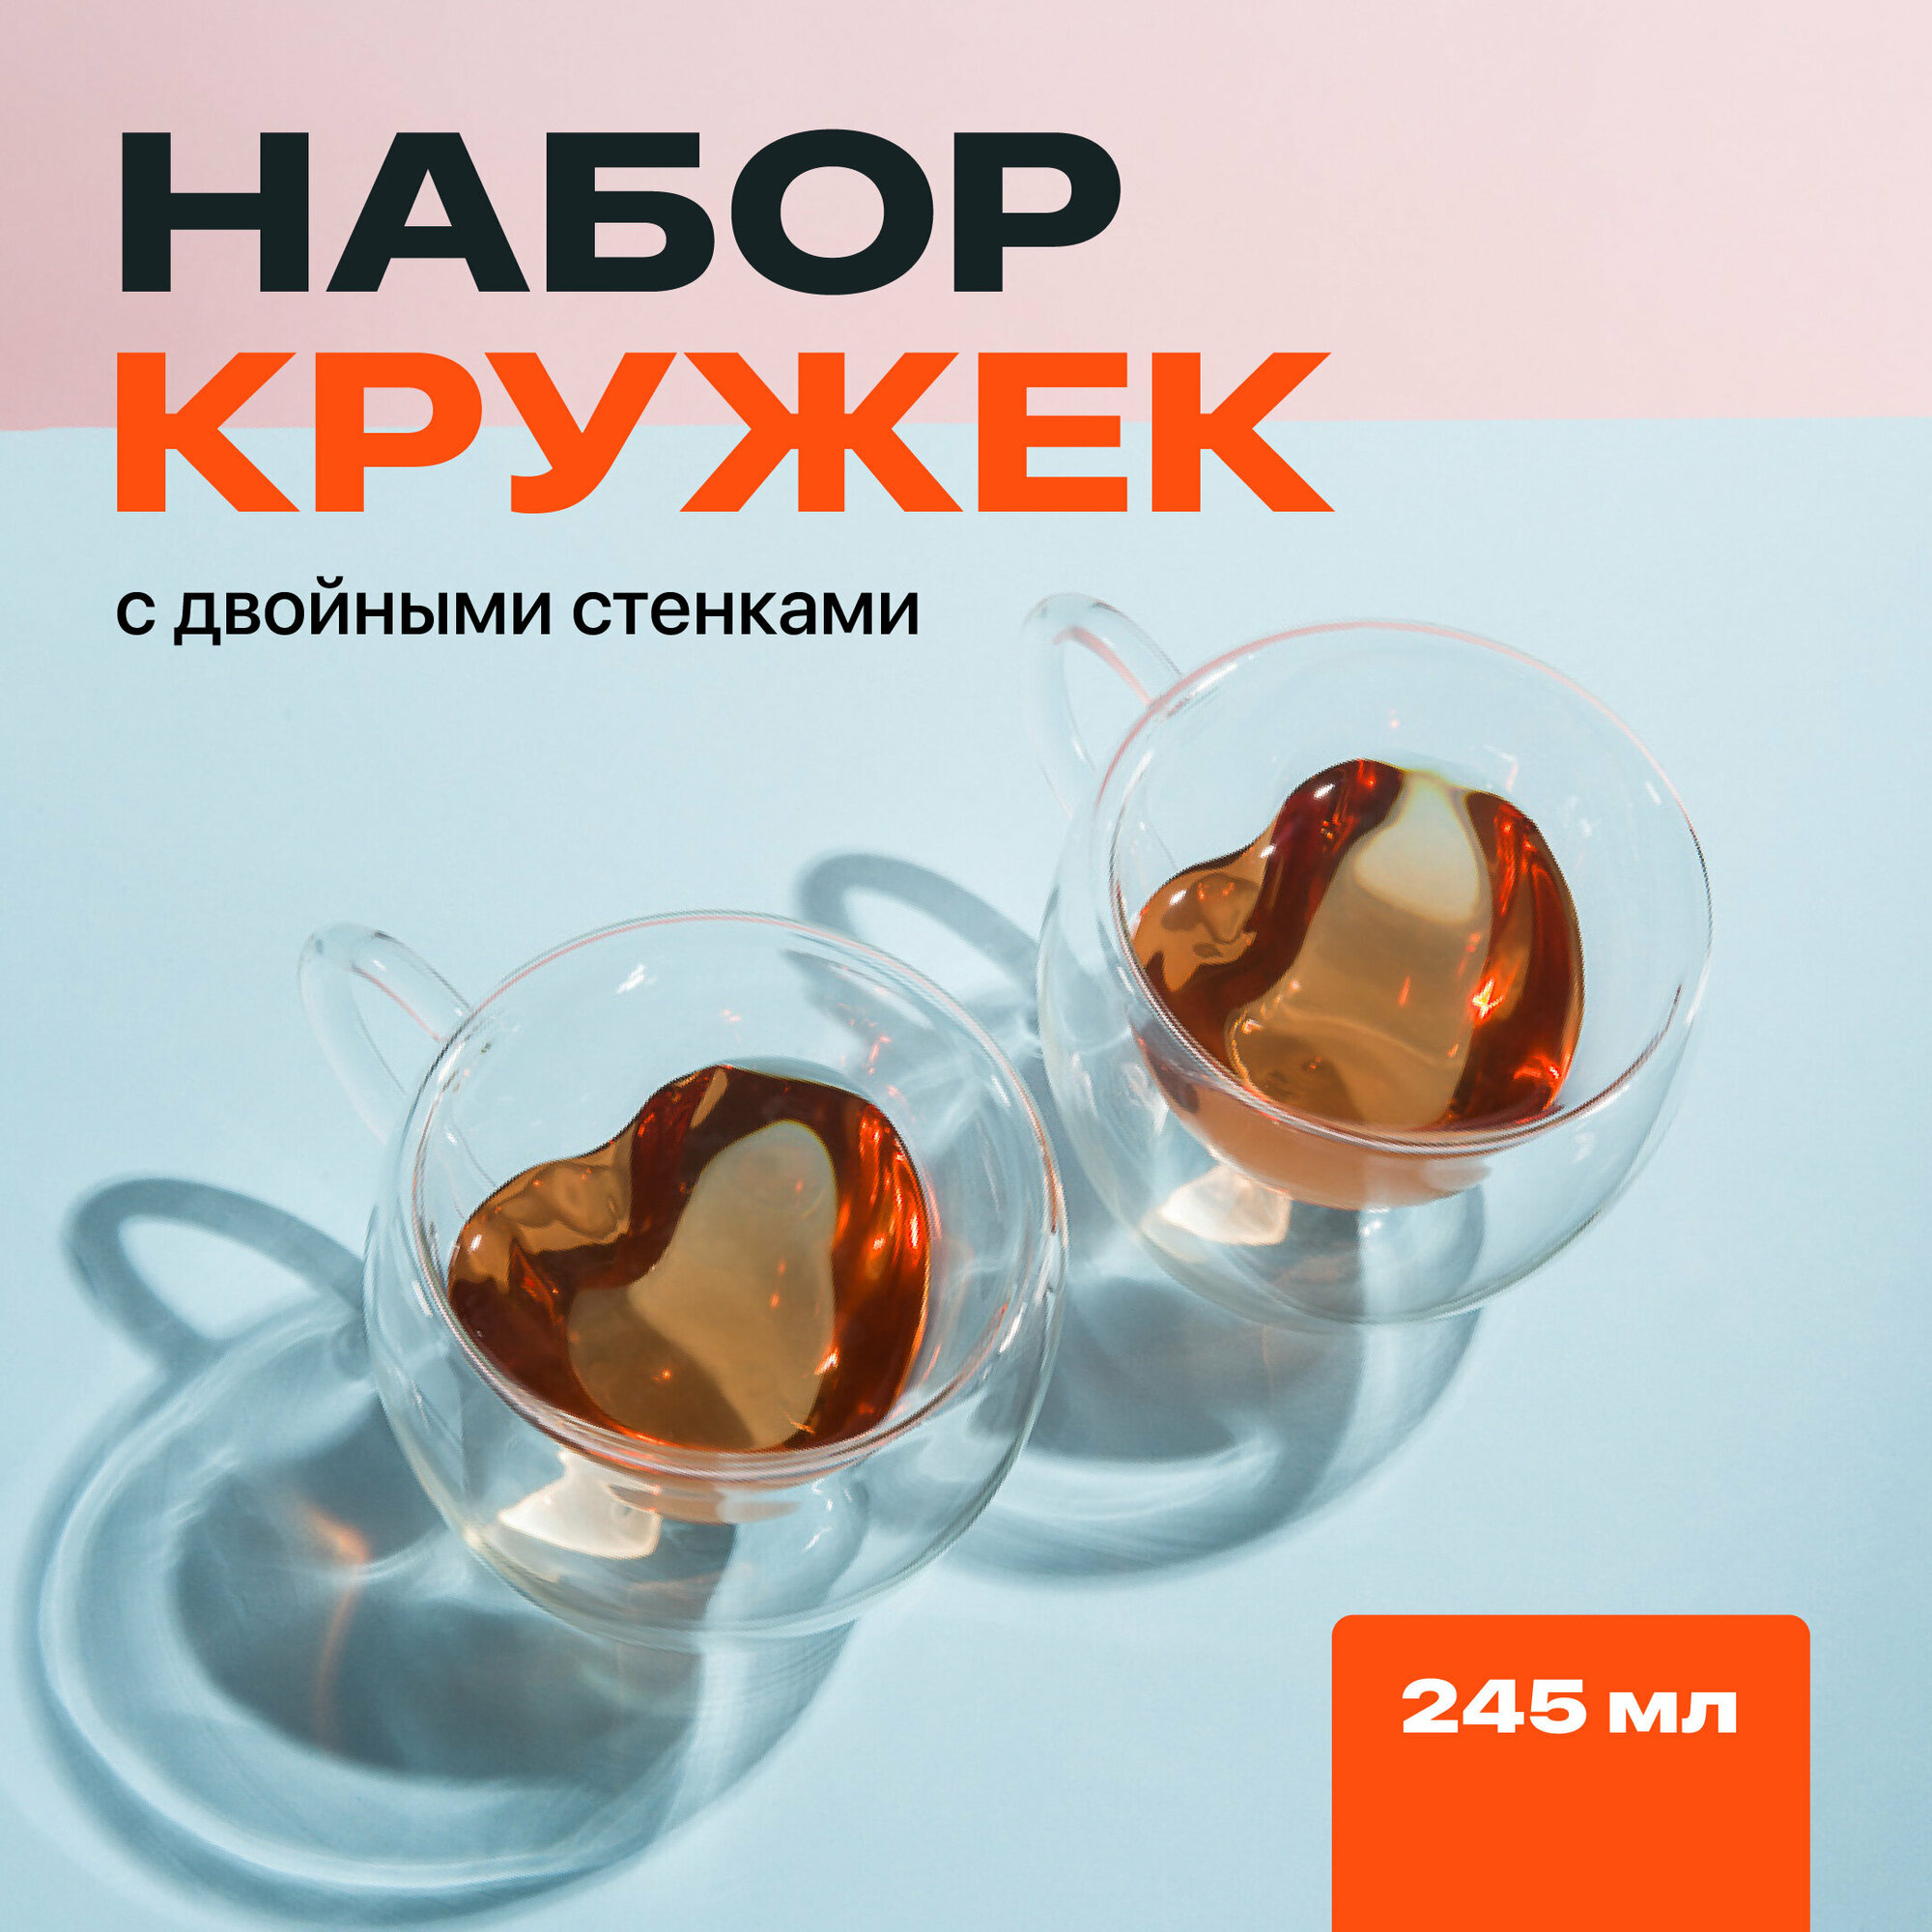 Кружка с двойными стенками, Limpid Side, Прозрачная чашка для кофе / чая, Термопосуда для горячих напитков, Набор кружек в форме сердца, 2 шт, 245 мл